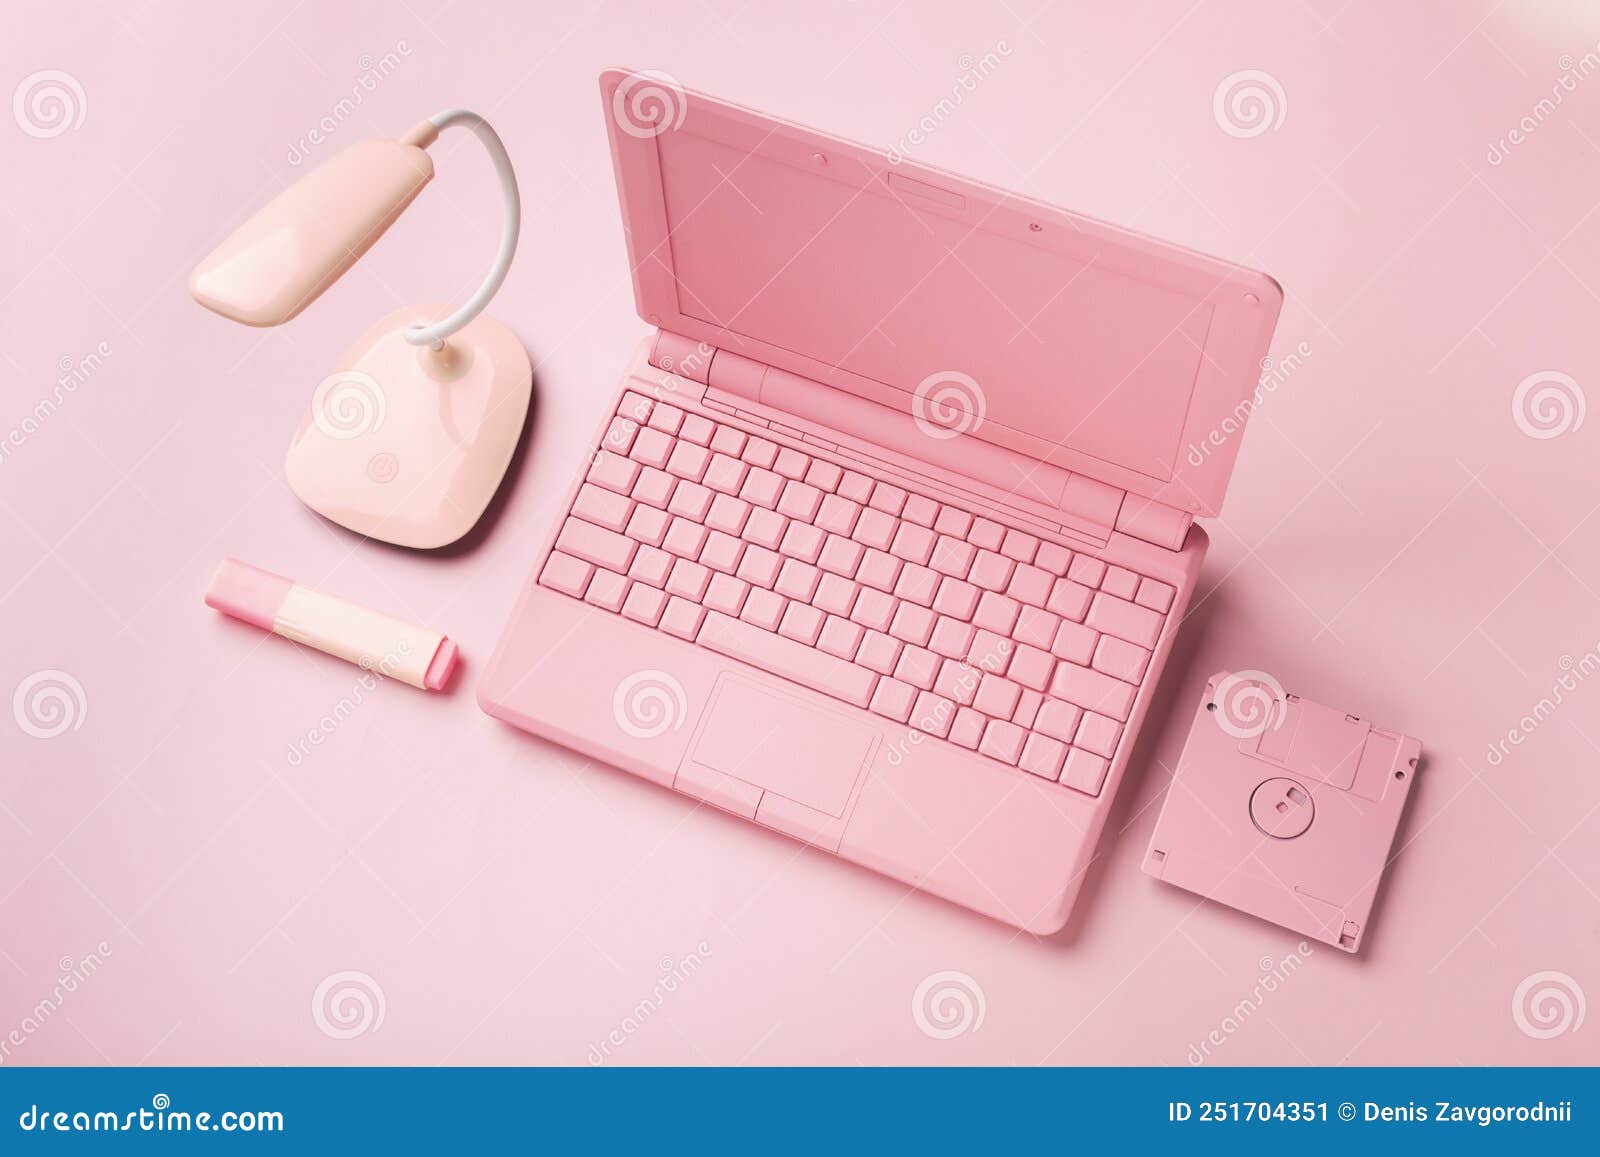 https://thumbs.dreamstime.com/z/ordinateur-portable-rose-de-couleur-avec-disquette-brillante-concept-modernit%C3%A9-conception-photo-haute-qualit%C3%A9-251704351.jpg